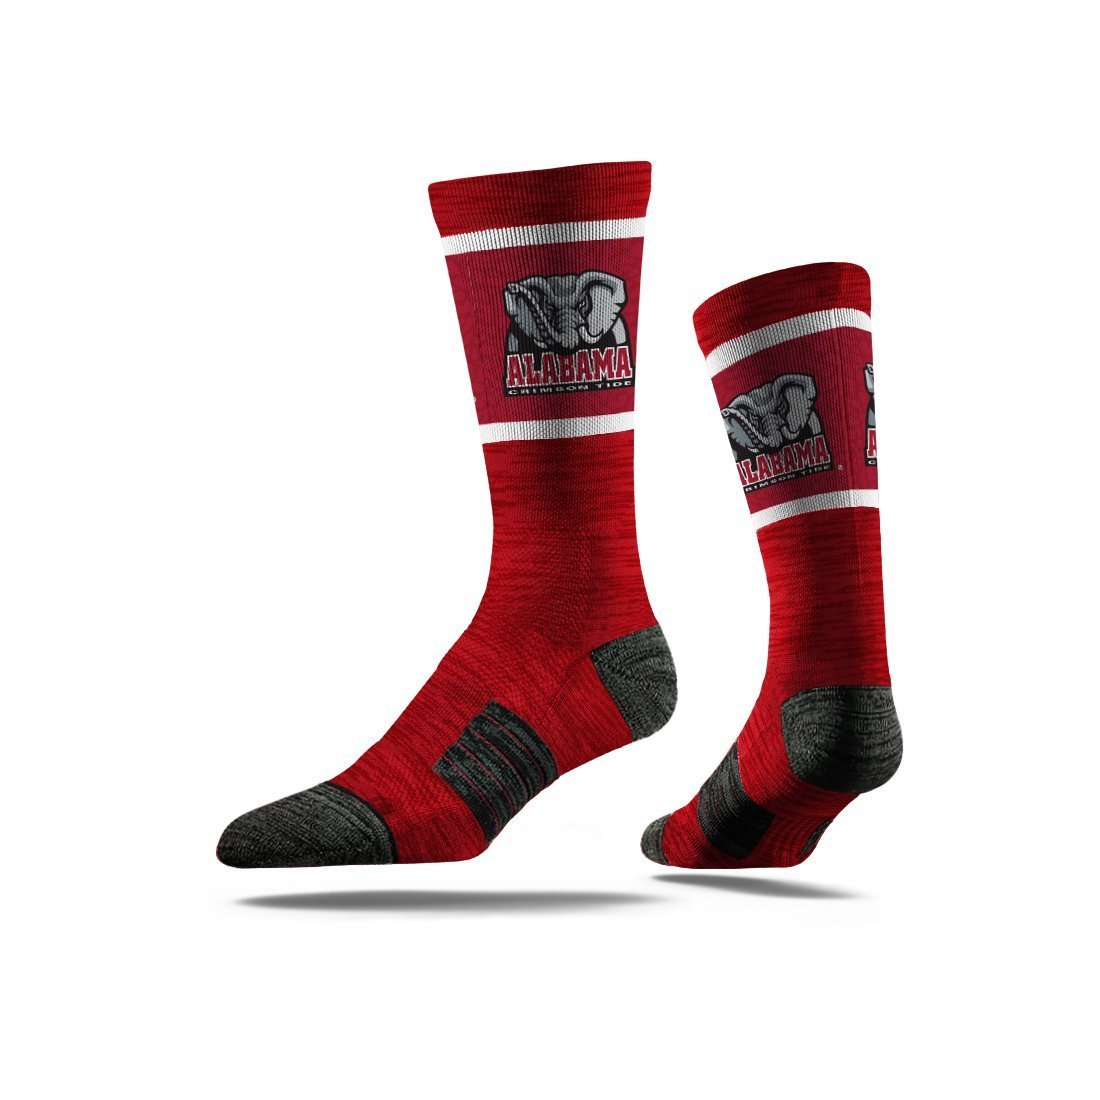 customizable socks company